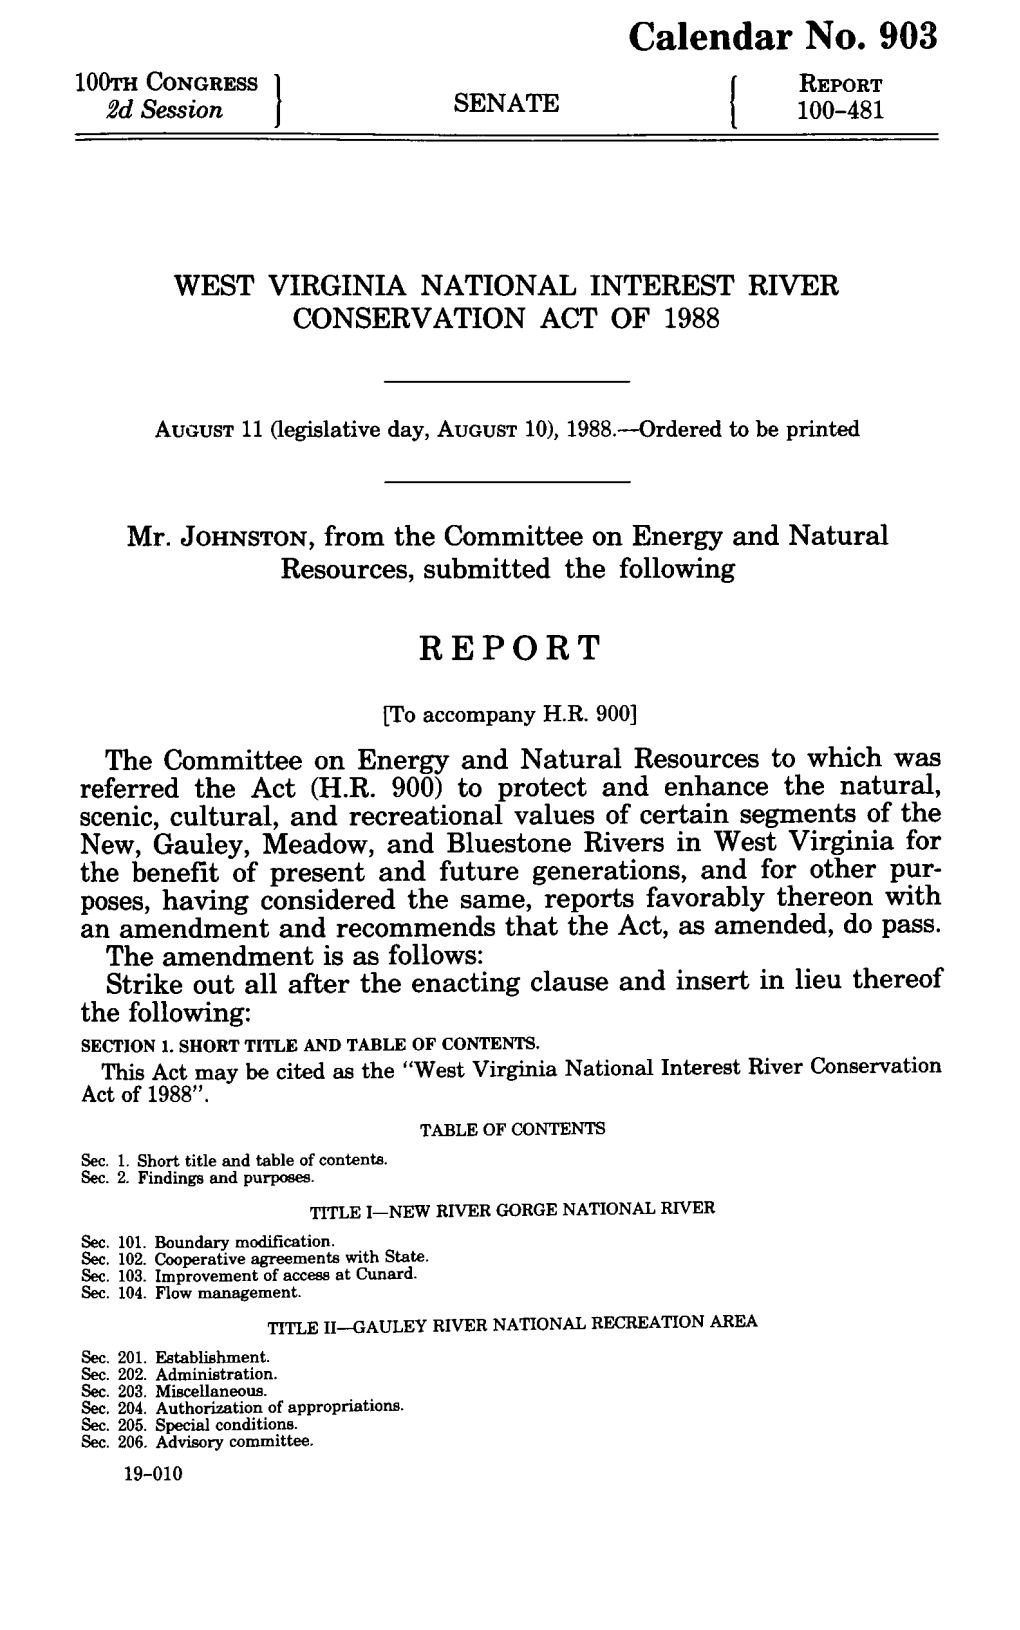 HR 900, Senate Report 100-481, August 11, 1988